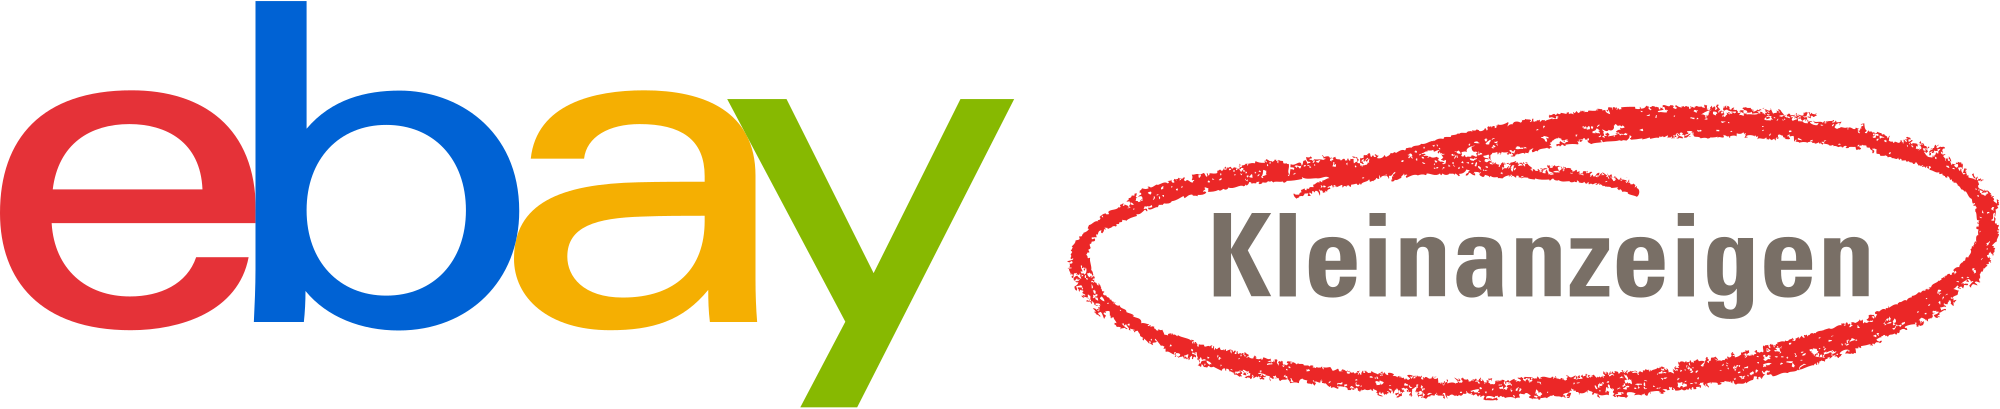 2000px EBay Kleinanzeigen Logo 2019.svg 1